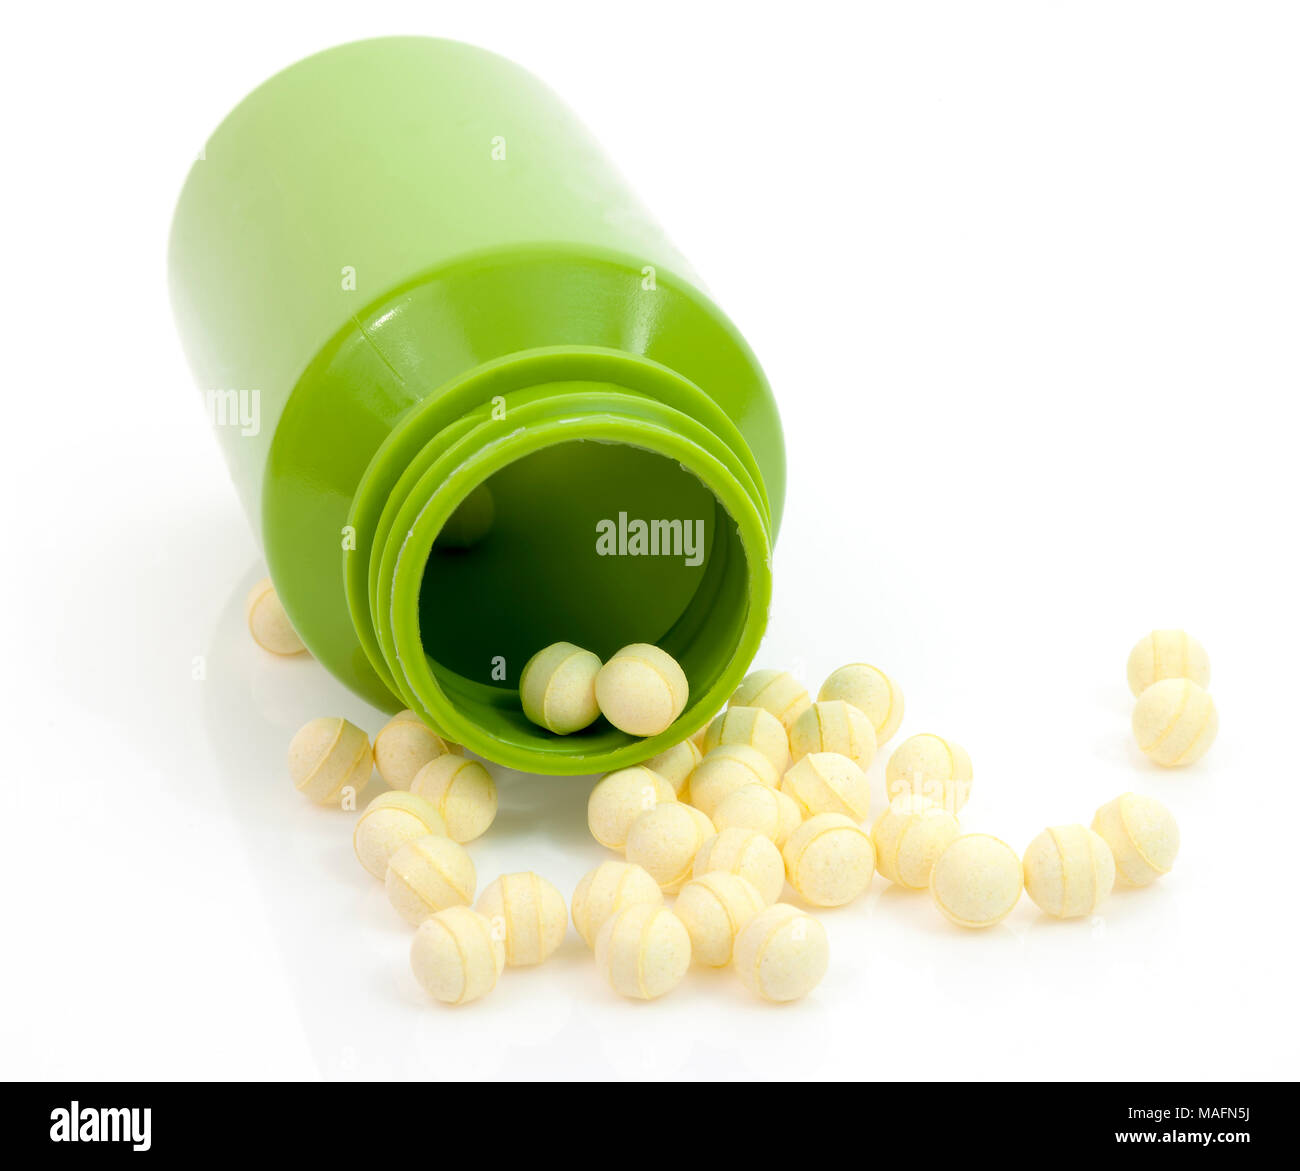 Les comprimés de probiotiques ronde jaune déversant du vert bouteille de médicament contre l'arrière-plan blanc. Banque D'Images